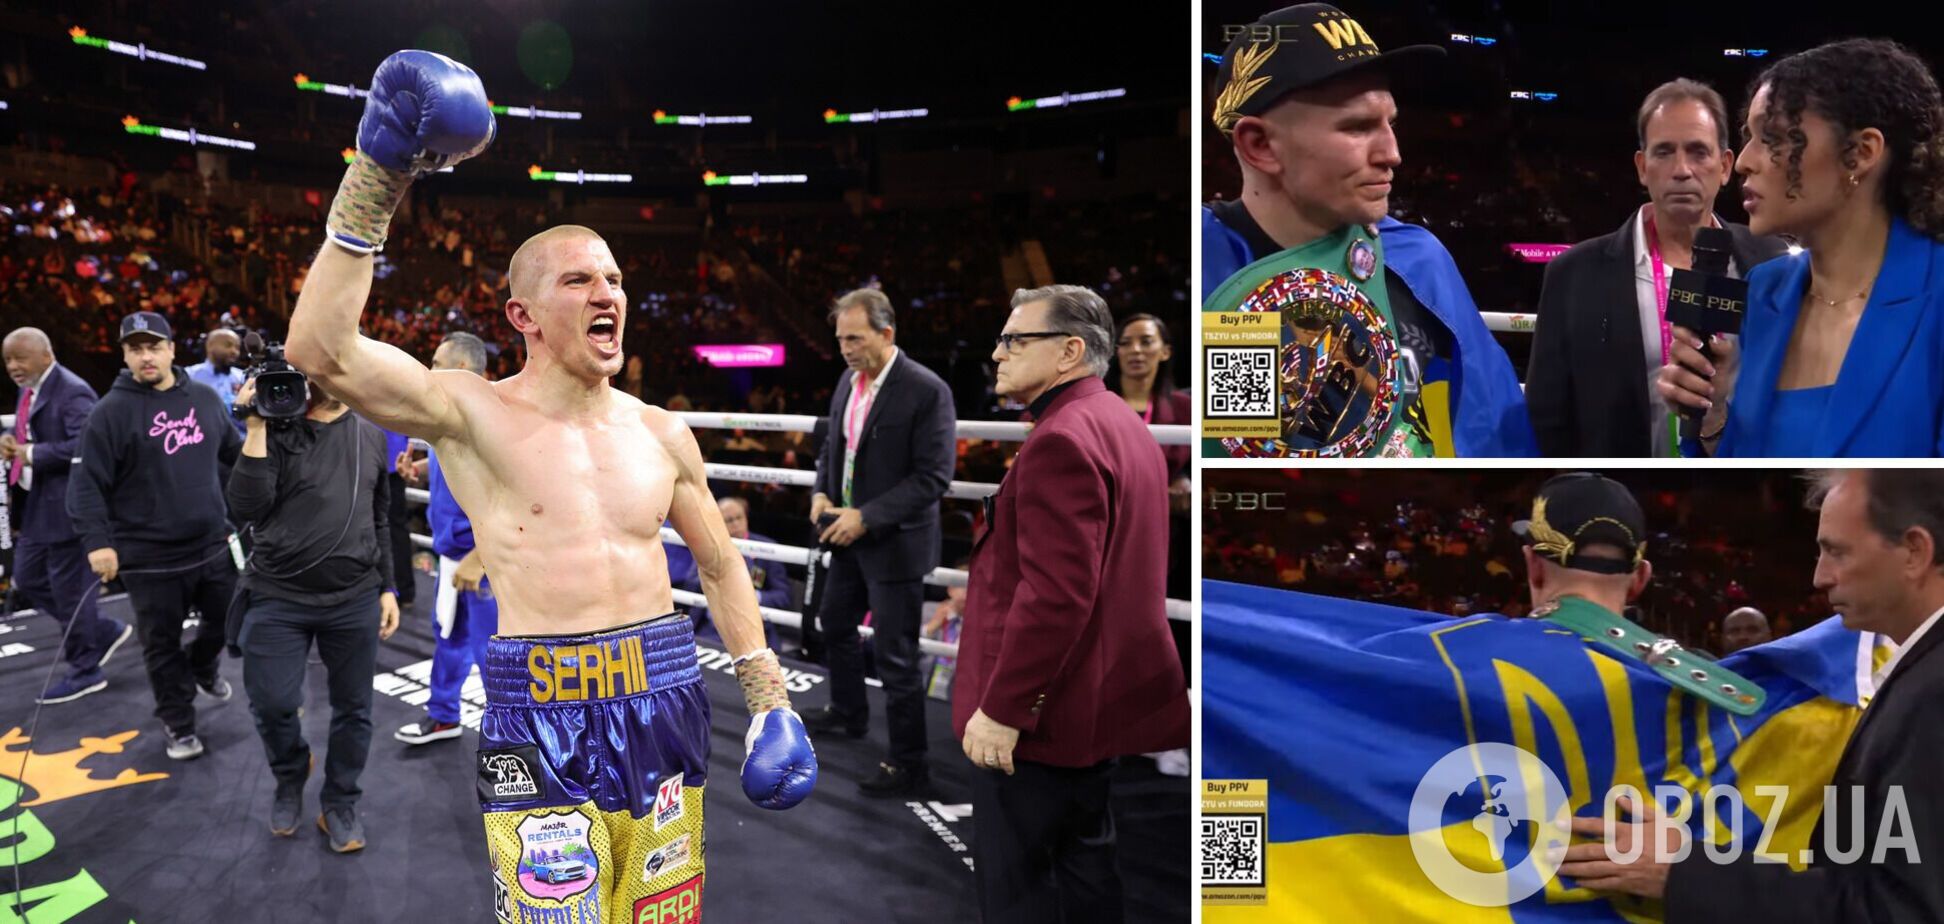 Чемпион мира по боксу после победы взял желто-синий флаг и заявил, что 'украинцы – несгибаемые'. Зал в США ответил овациями. Видео
 